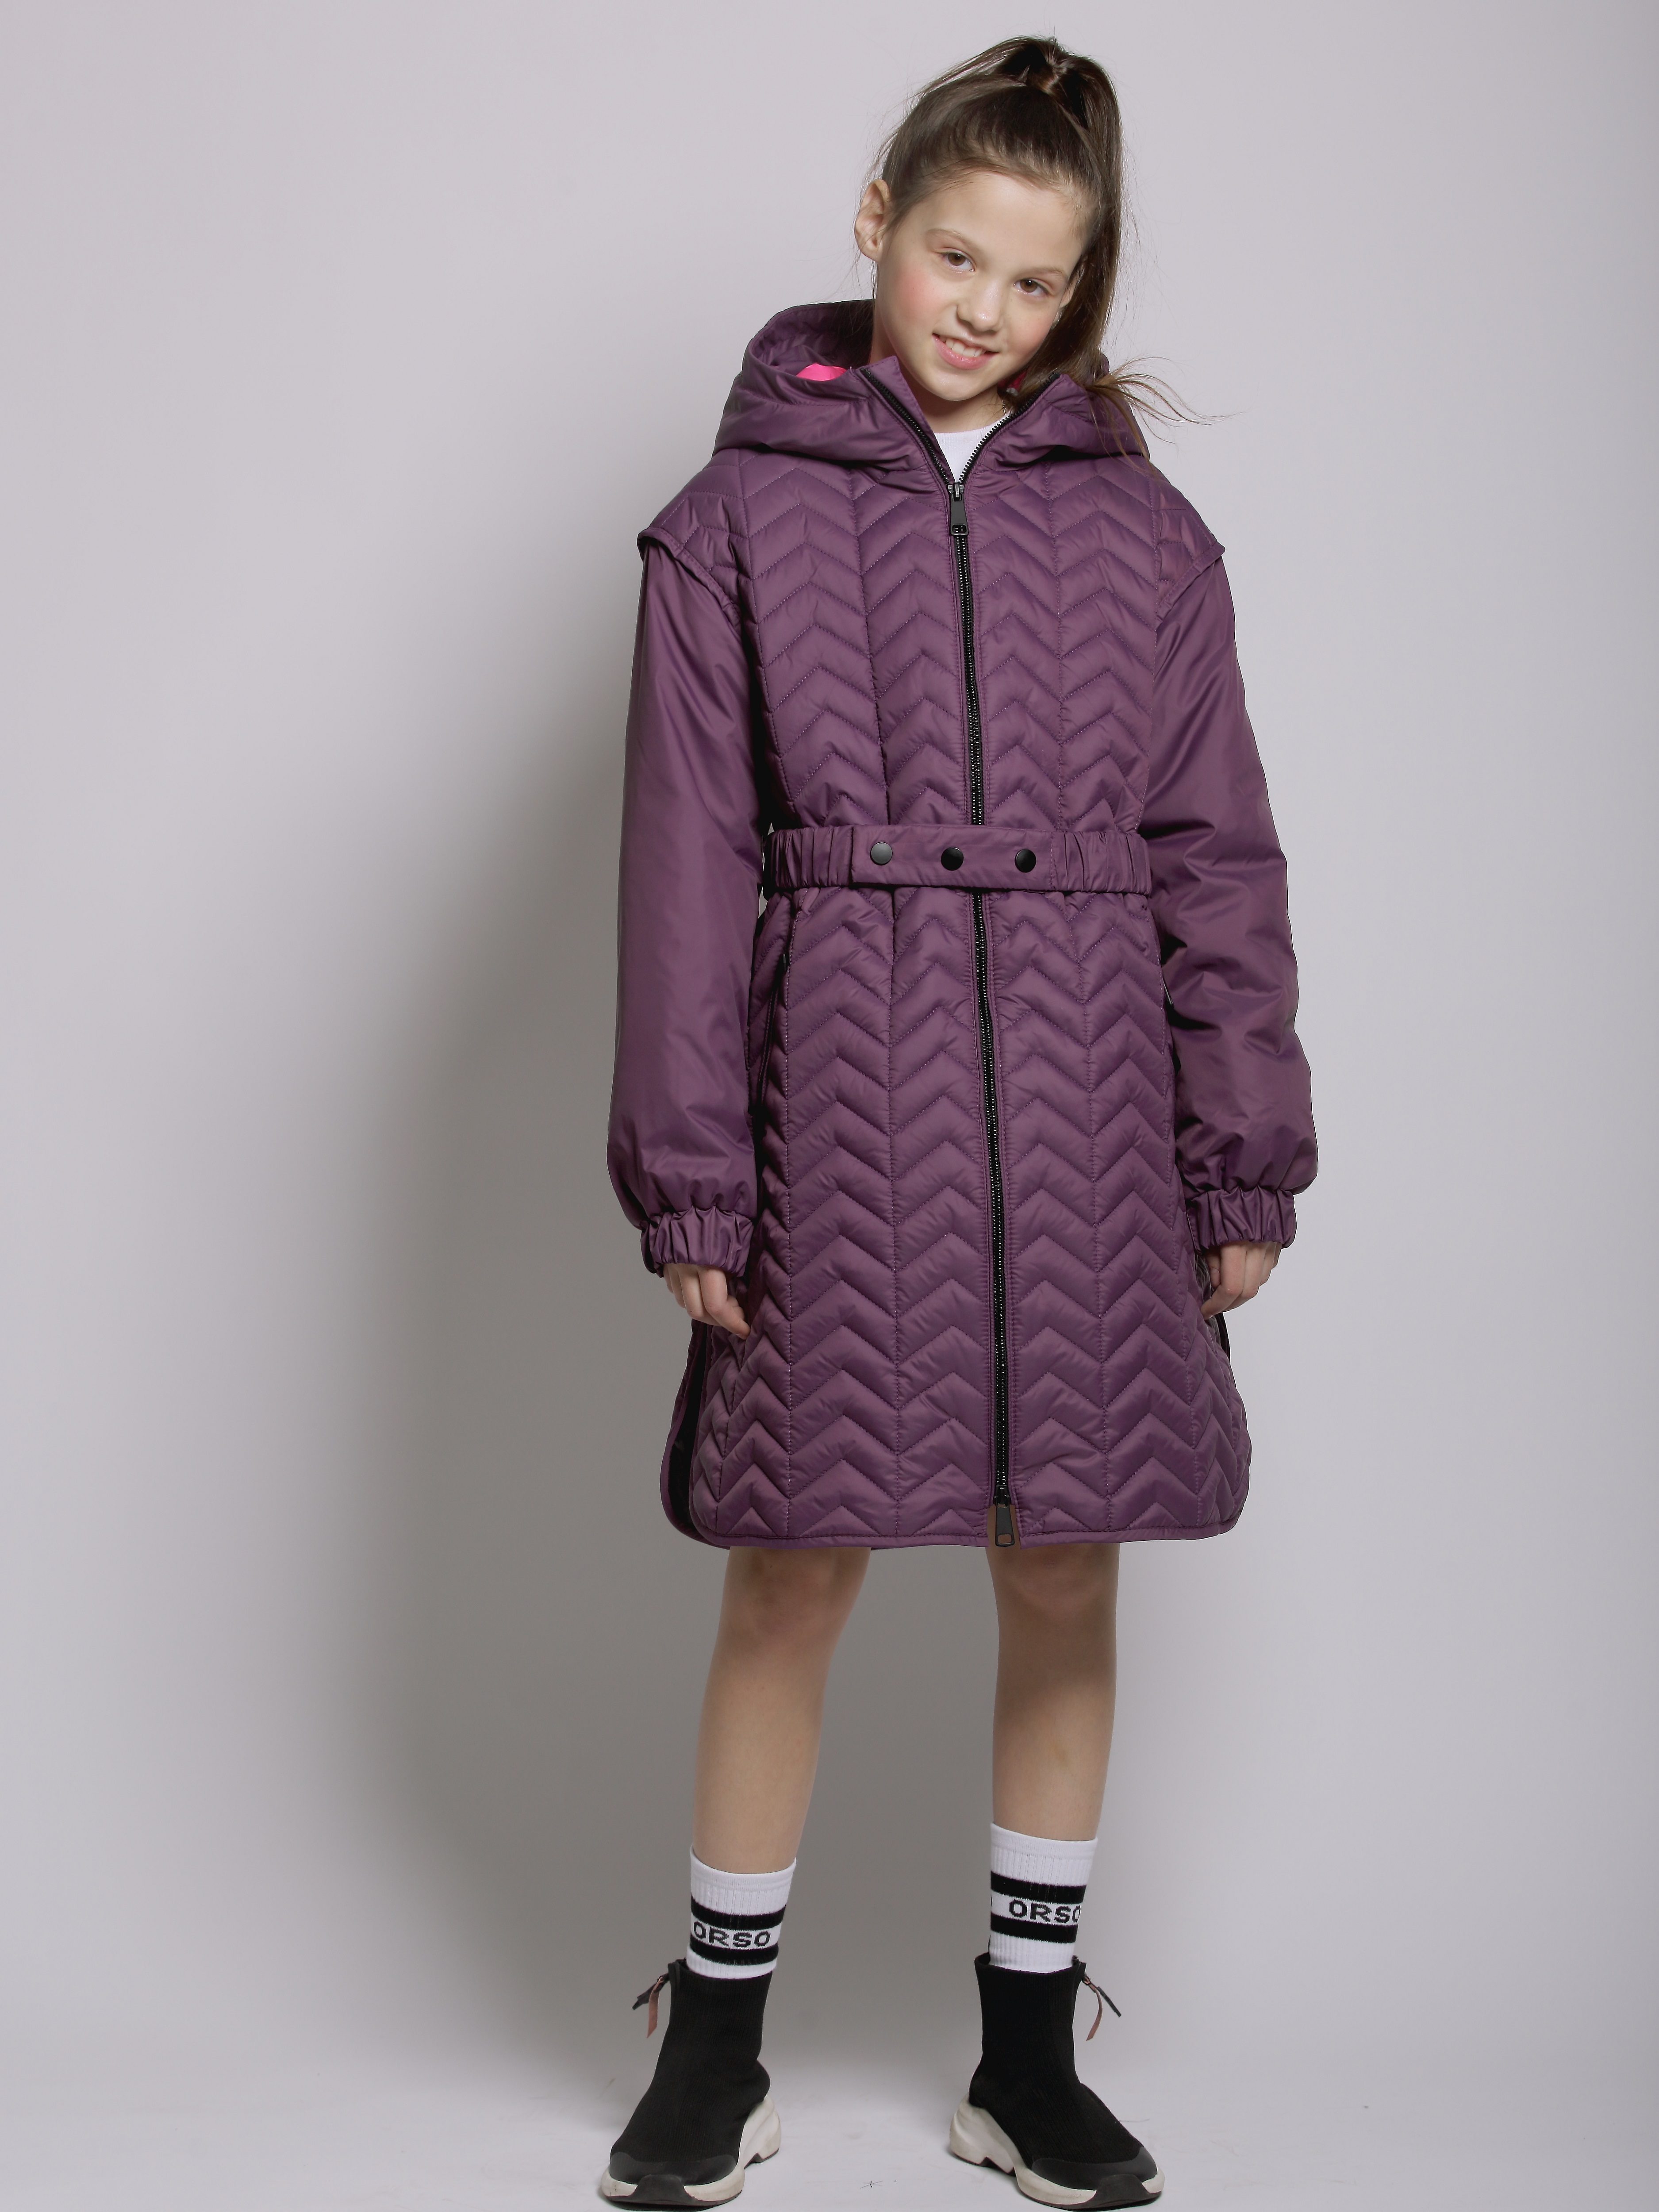 Пальто детское Orso Bianco Мелисса, темно-фиолетовый, ярко-розовый, 140